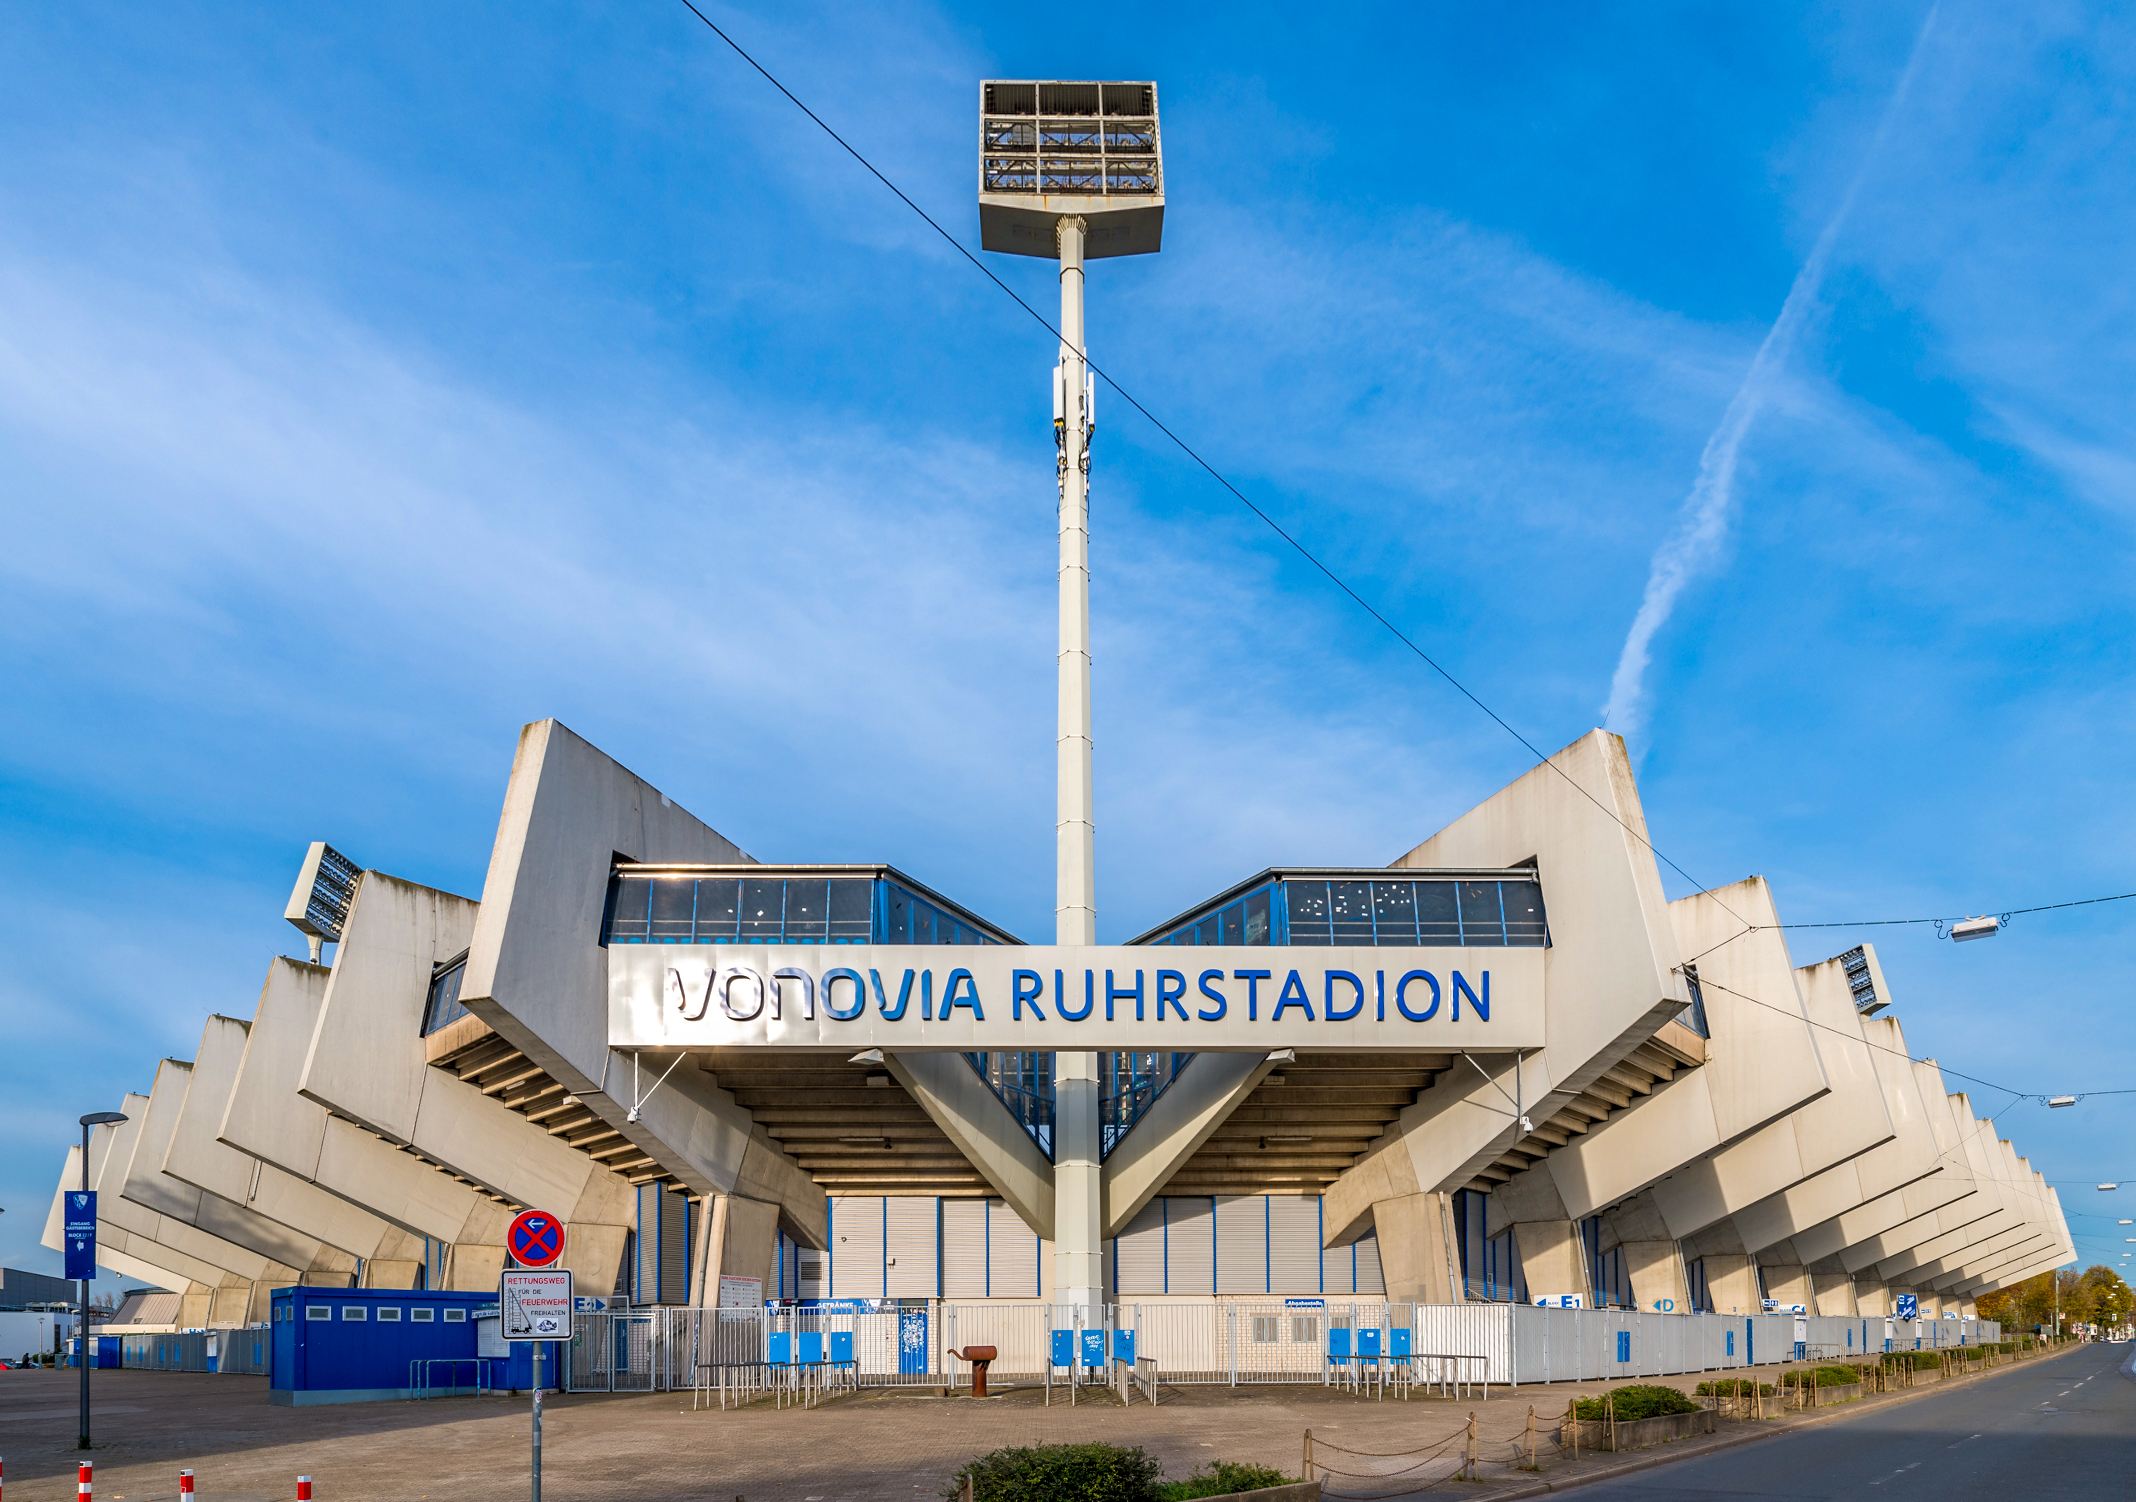 Das Vonovia Ruhrstadion von vorne und der klare blaue Himmel darüber